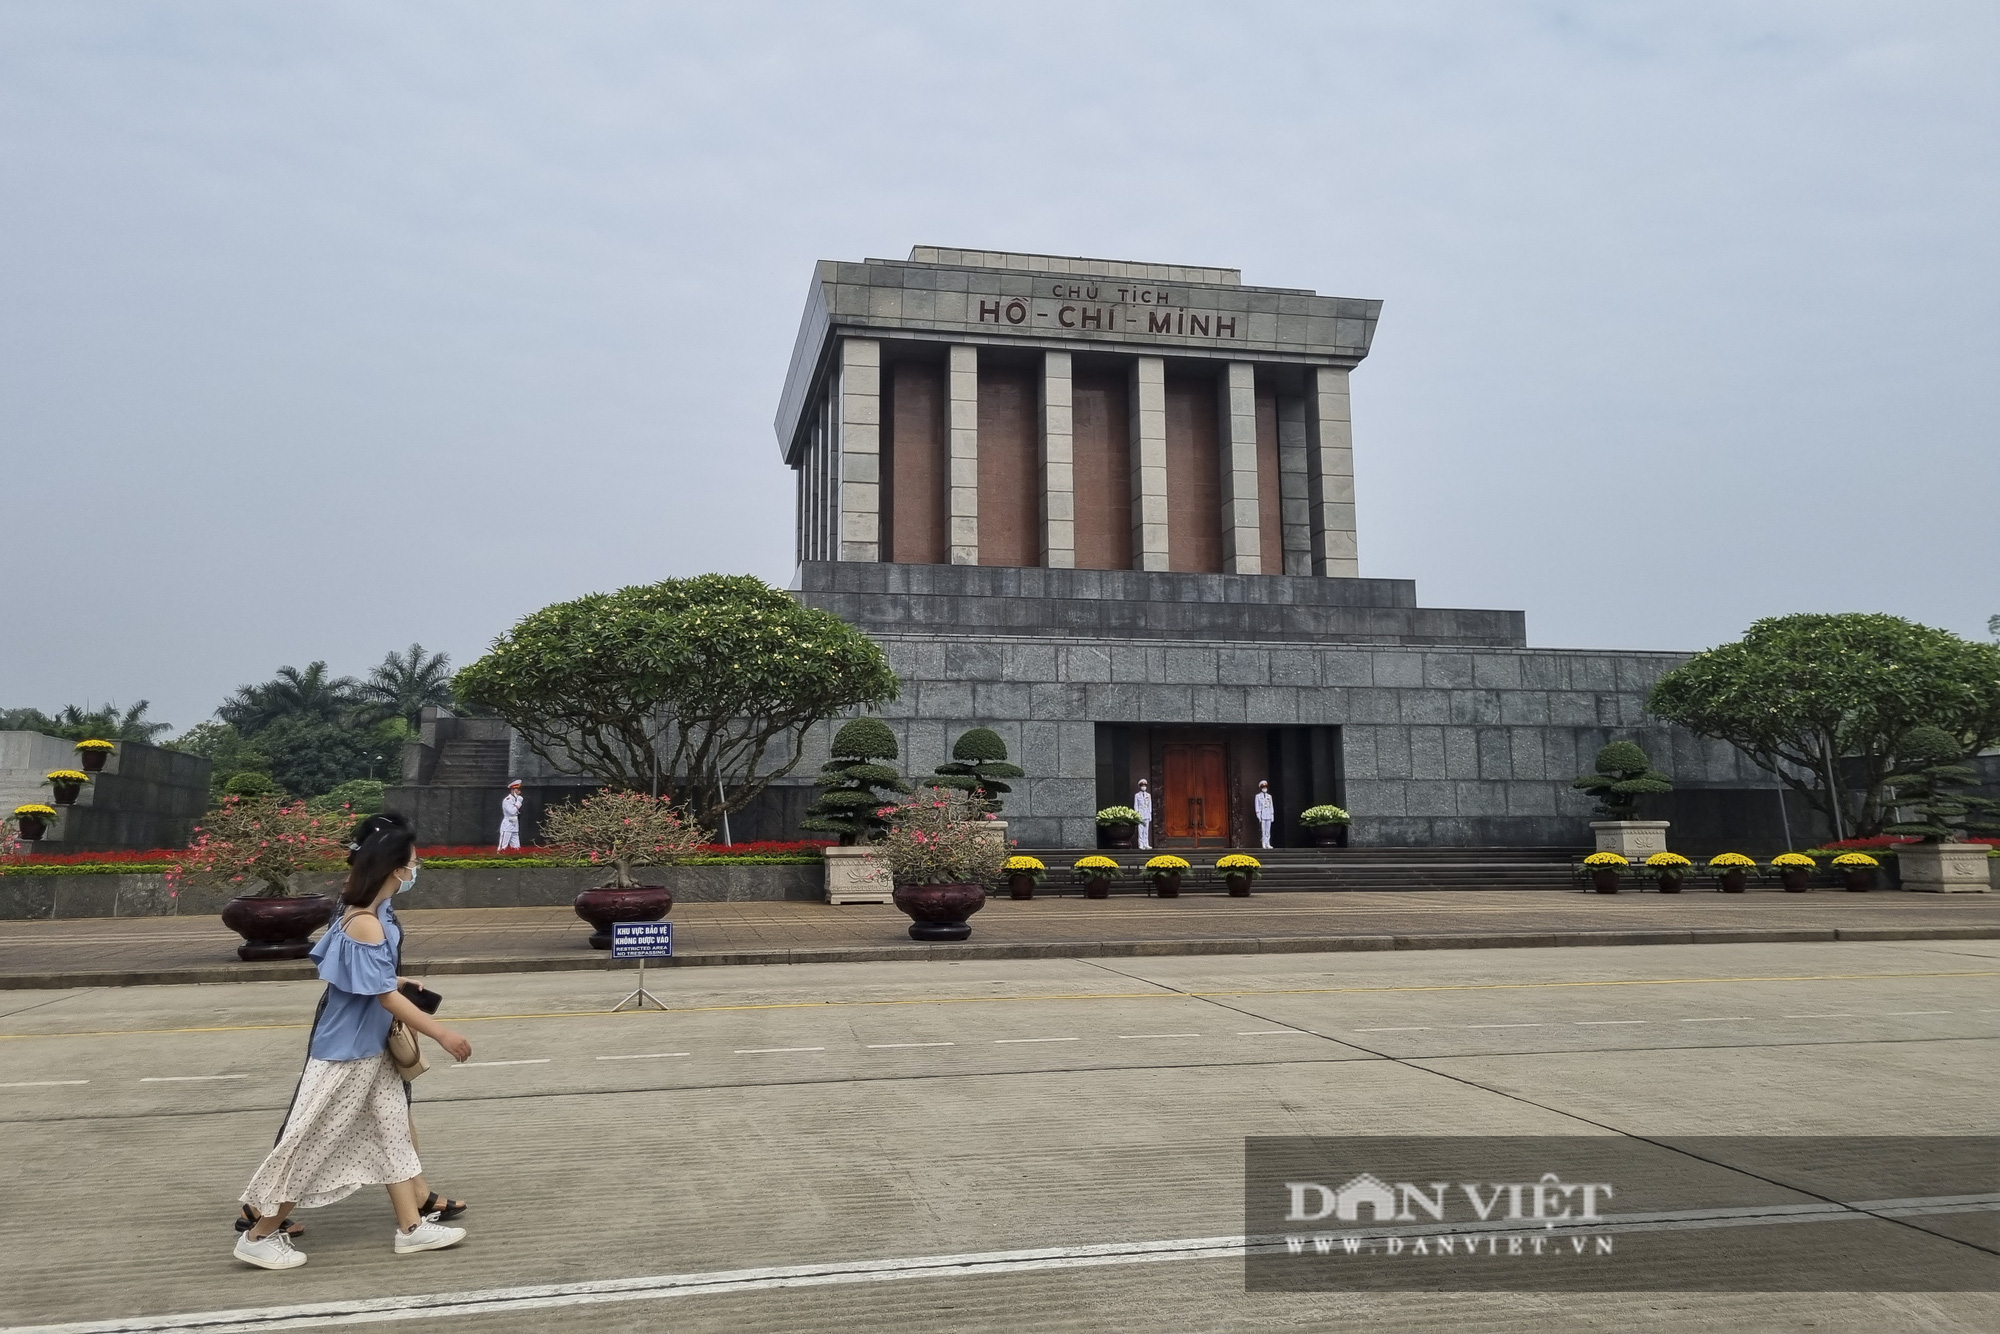 Bất ngờ lượng du khách tham quan lăng Bác, bảo tàng tại Hà Nội trong sáng 30/4 - Ảnh 3.